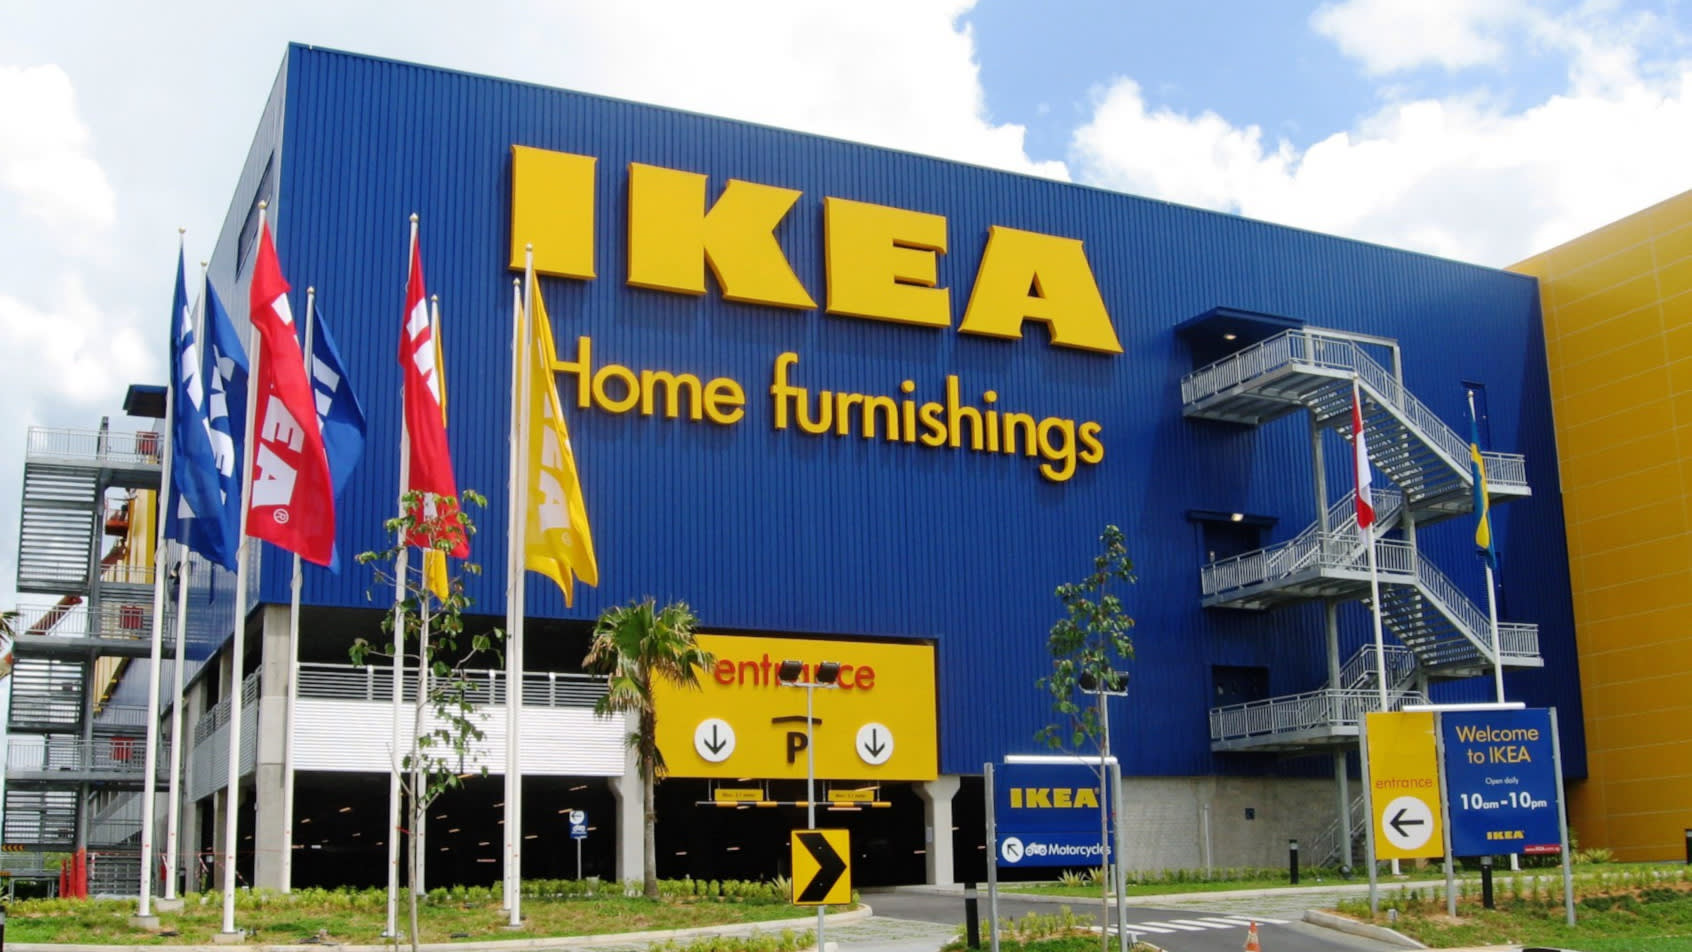 IKEA, 3D baskı yöntemiyle mobilyaları engelli insanlar için daha erişilebilir yapmak istiyor